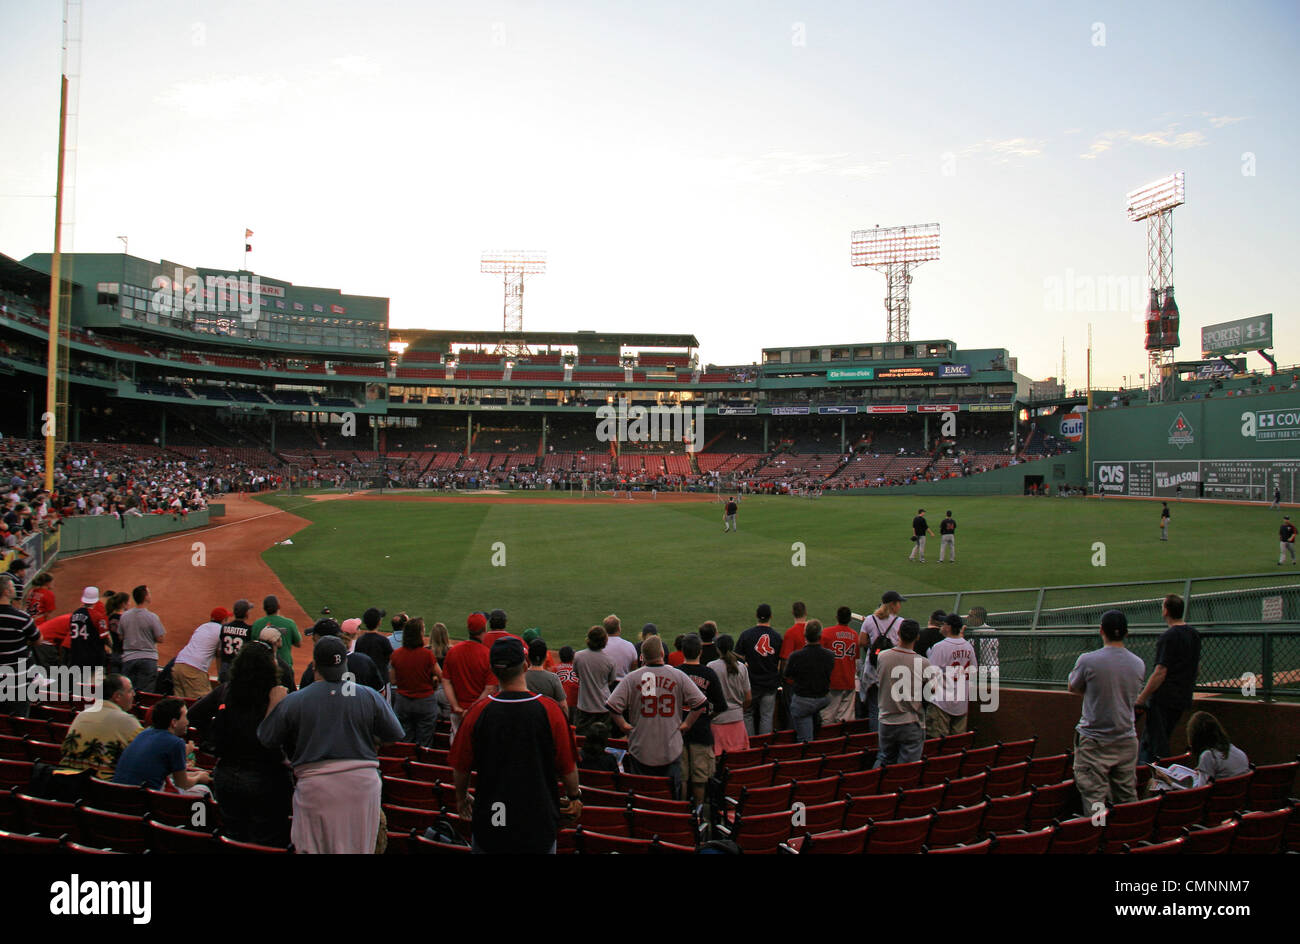 Il Fenway Park, casa dei Boston Red Sox Major League Baseball team in Boston, Massachusetts, Stati Uniti. Foto Stock